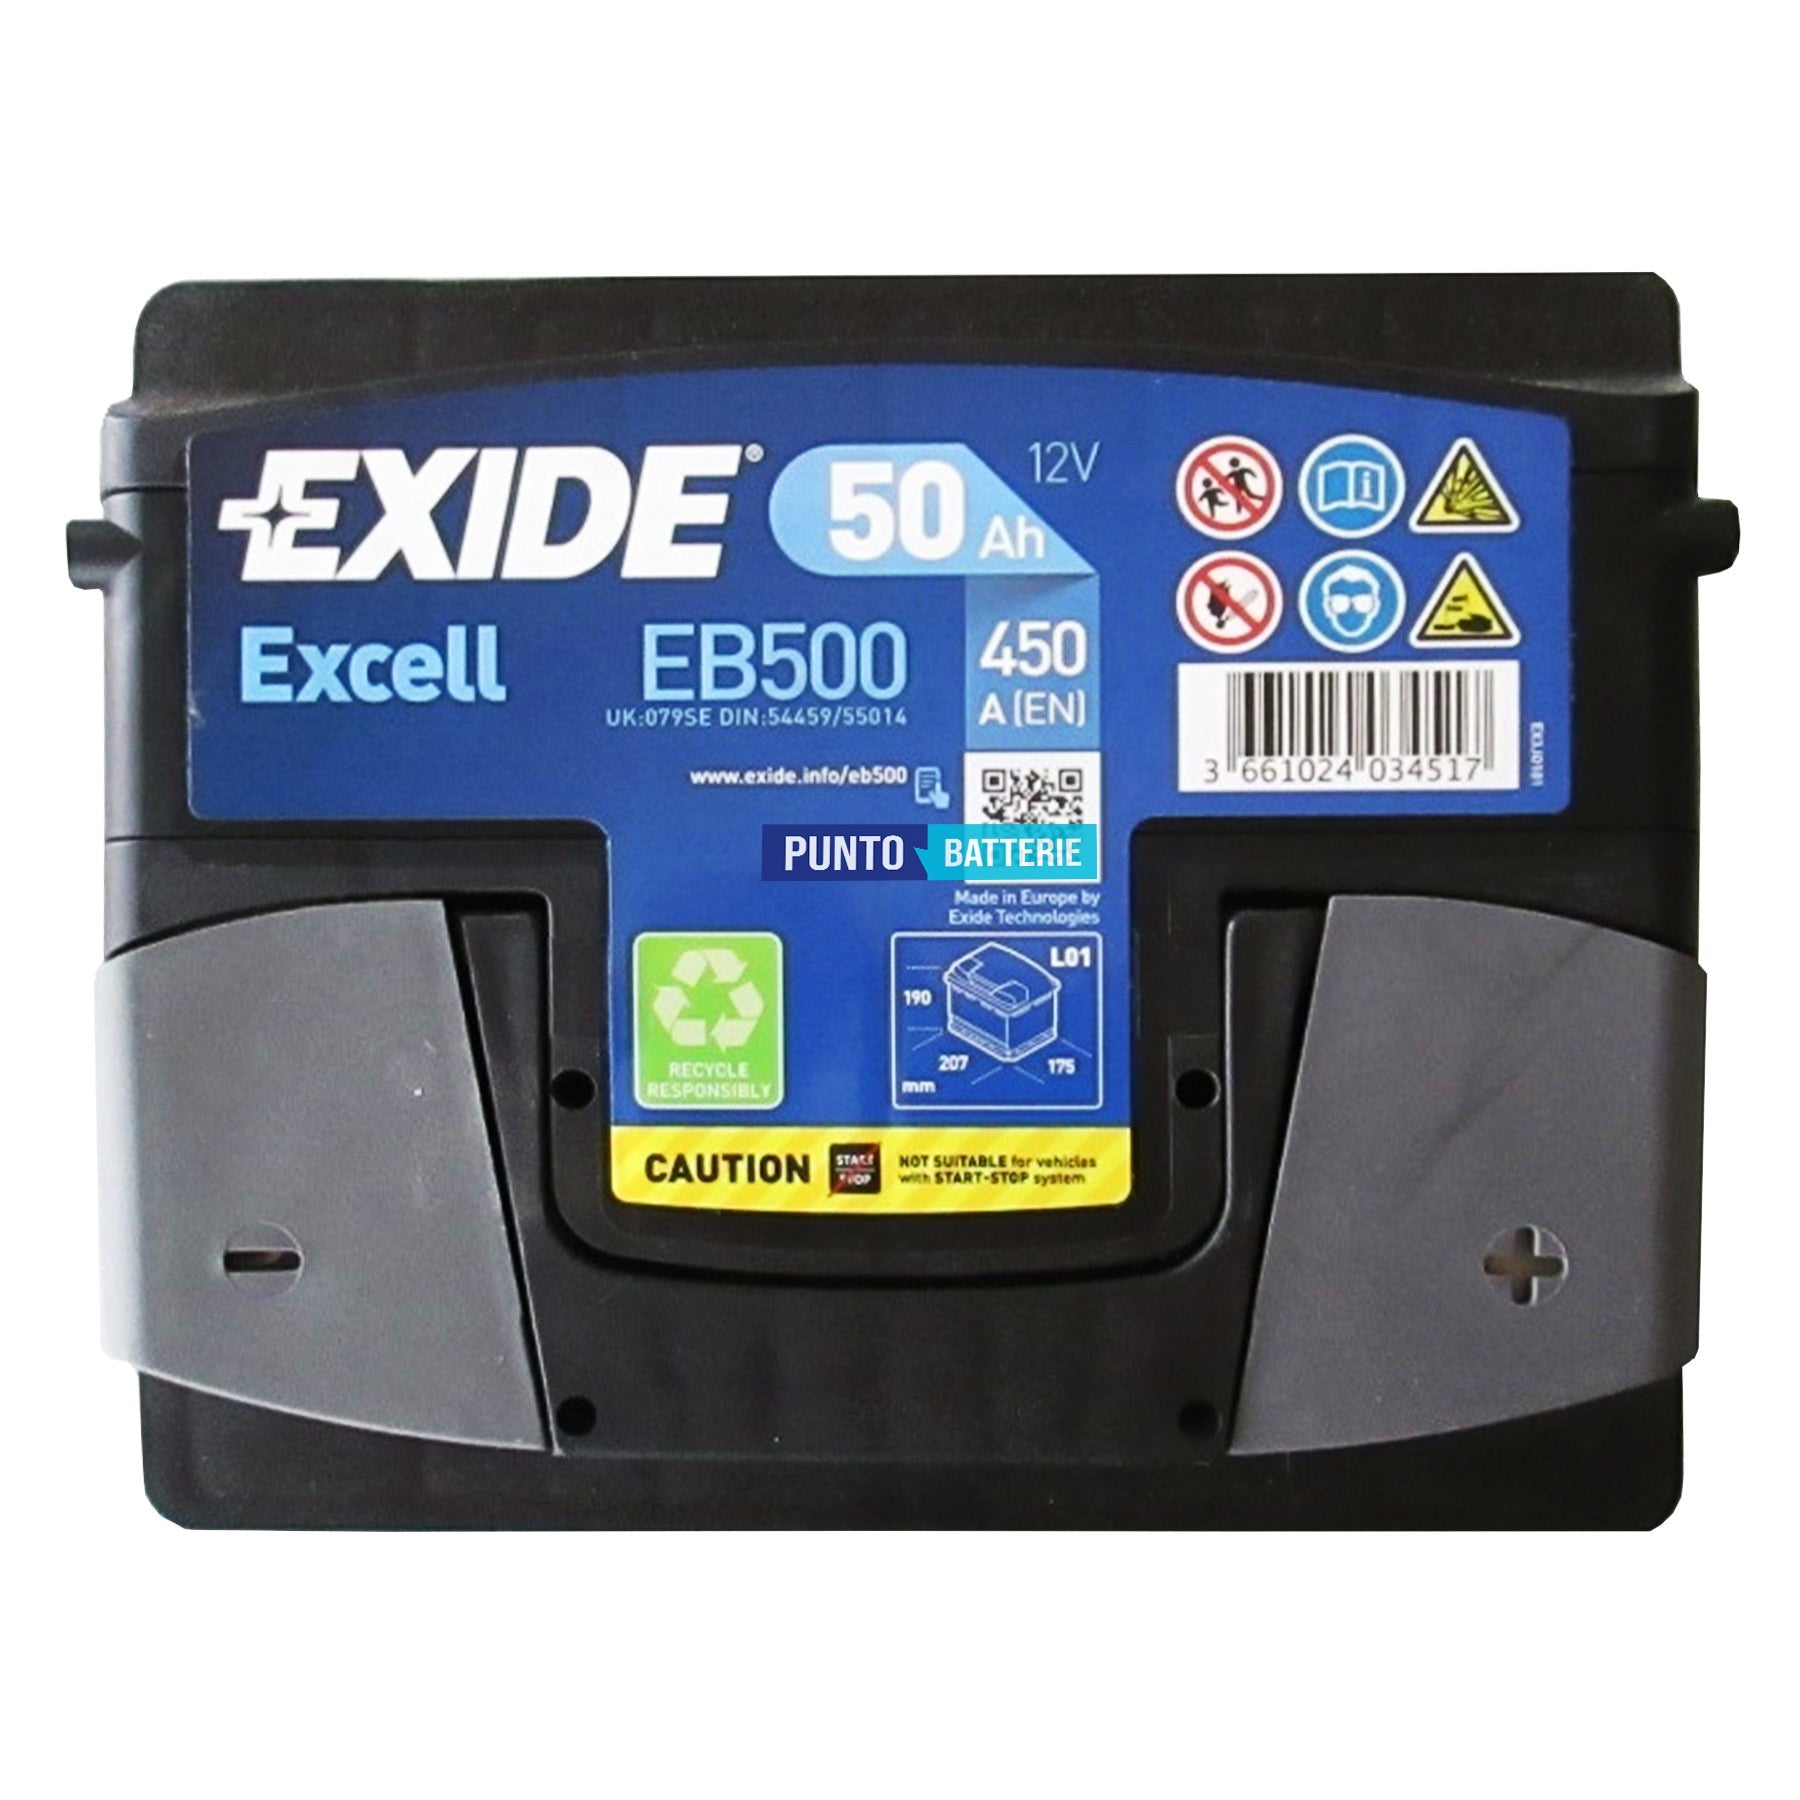 Batteria Exide EB500 Excell